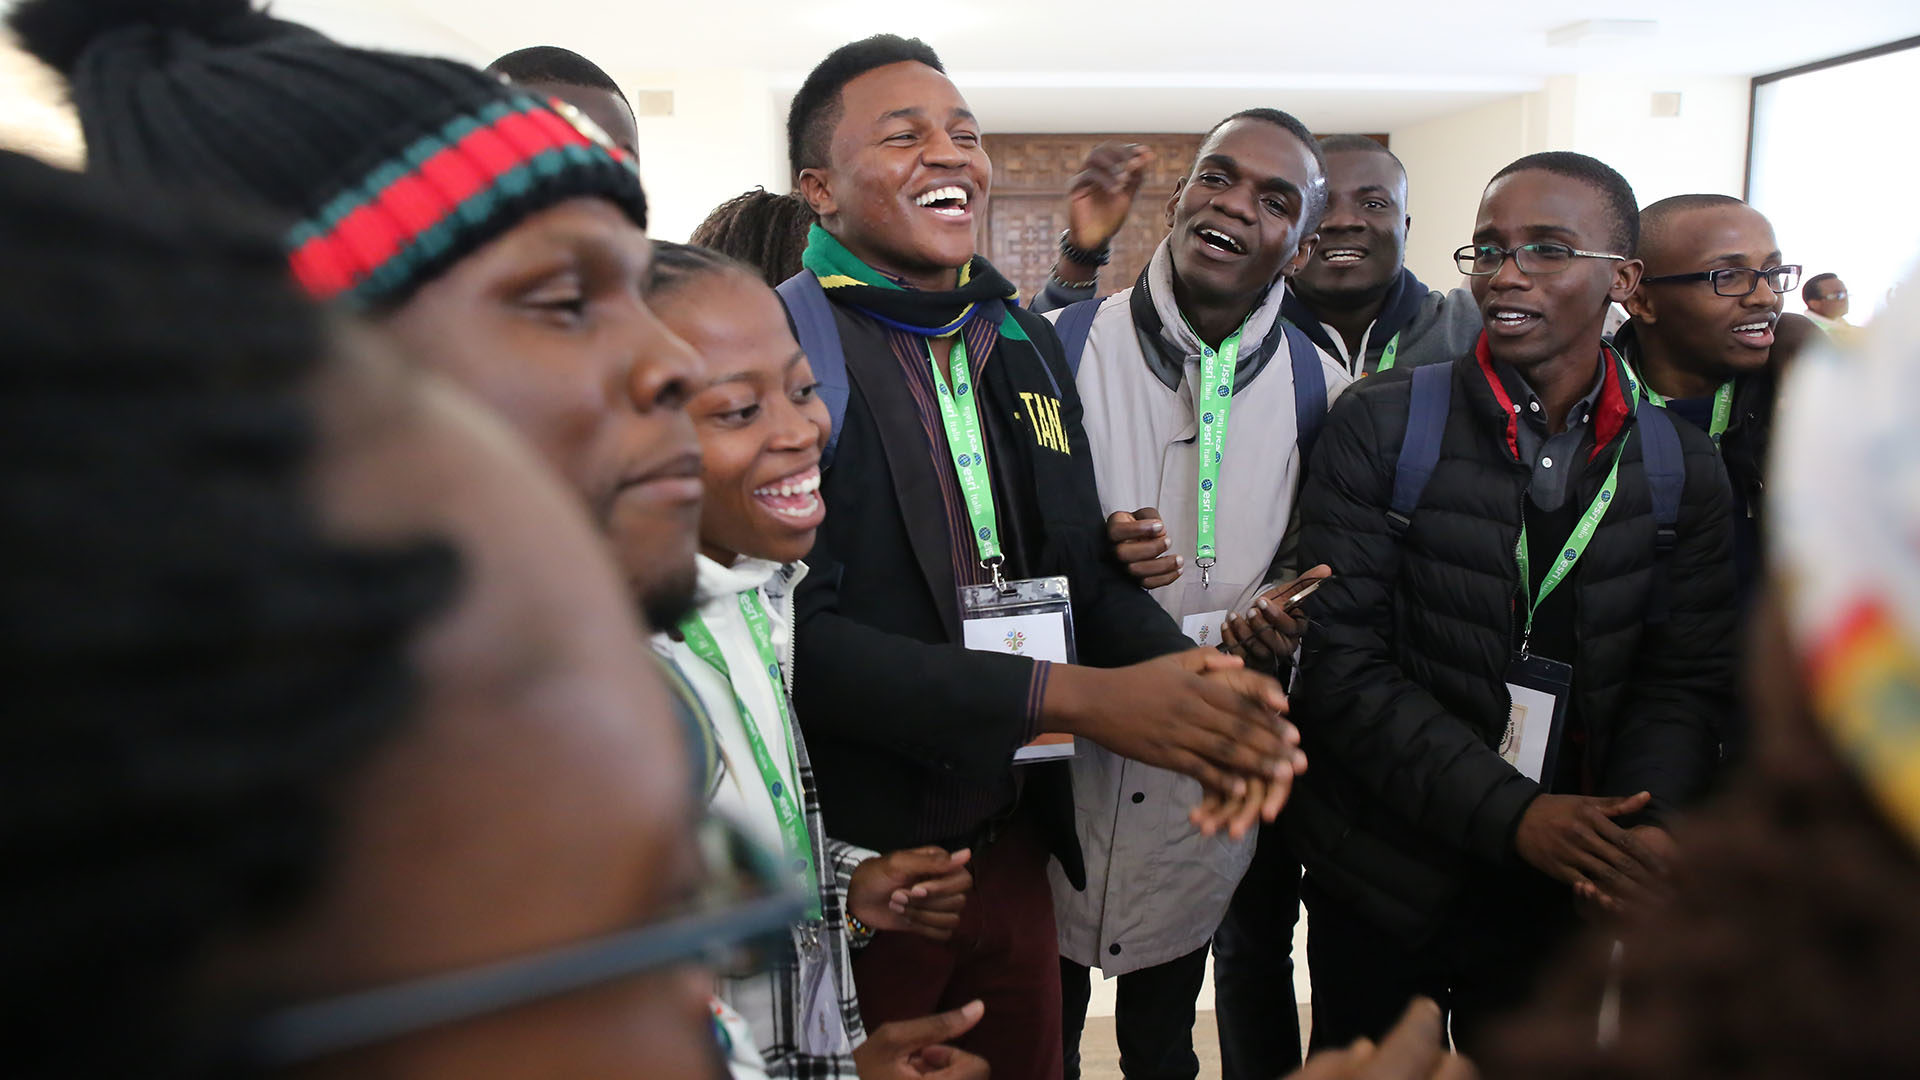 Rome le 19 mars 2018. Les jeunes Africains venus au pré-synode de plusieurs pays chantent dans le hall du Collège Matter Ecclesiae. | © B. Hallet